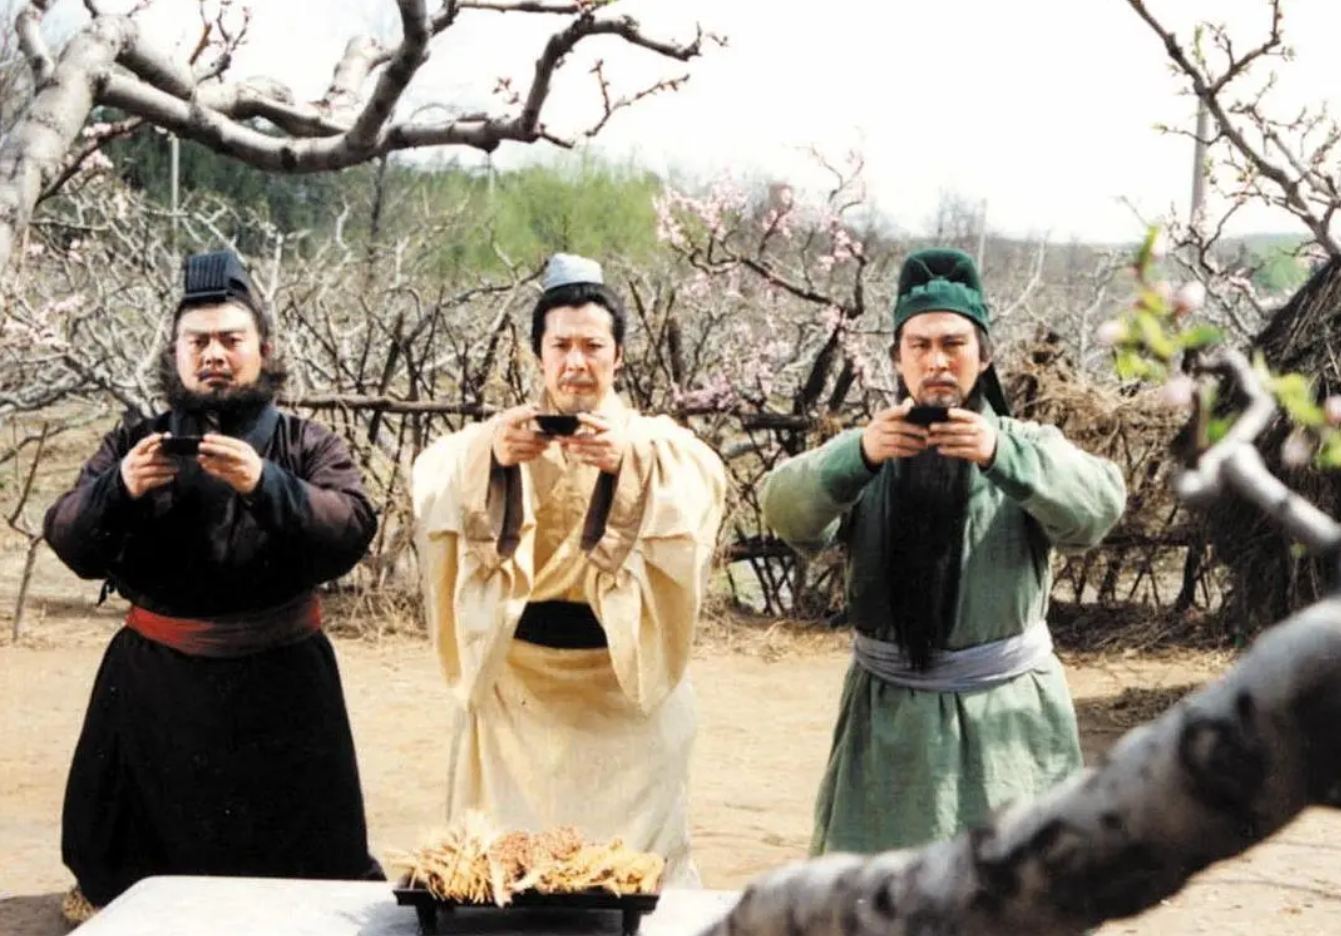 刘关张桃园三结义,1994版电视剧《三国演义》剧照,图源豆瓣